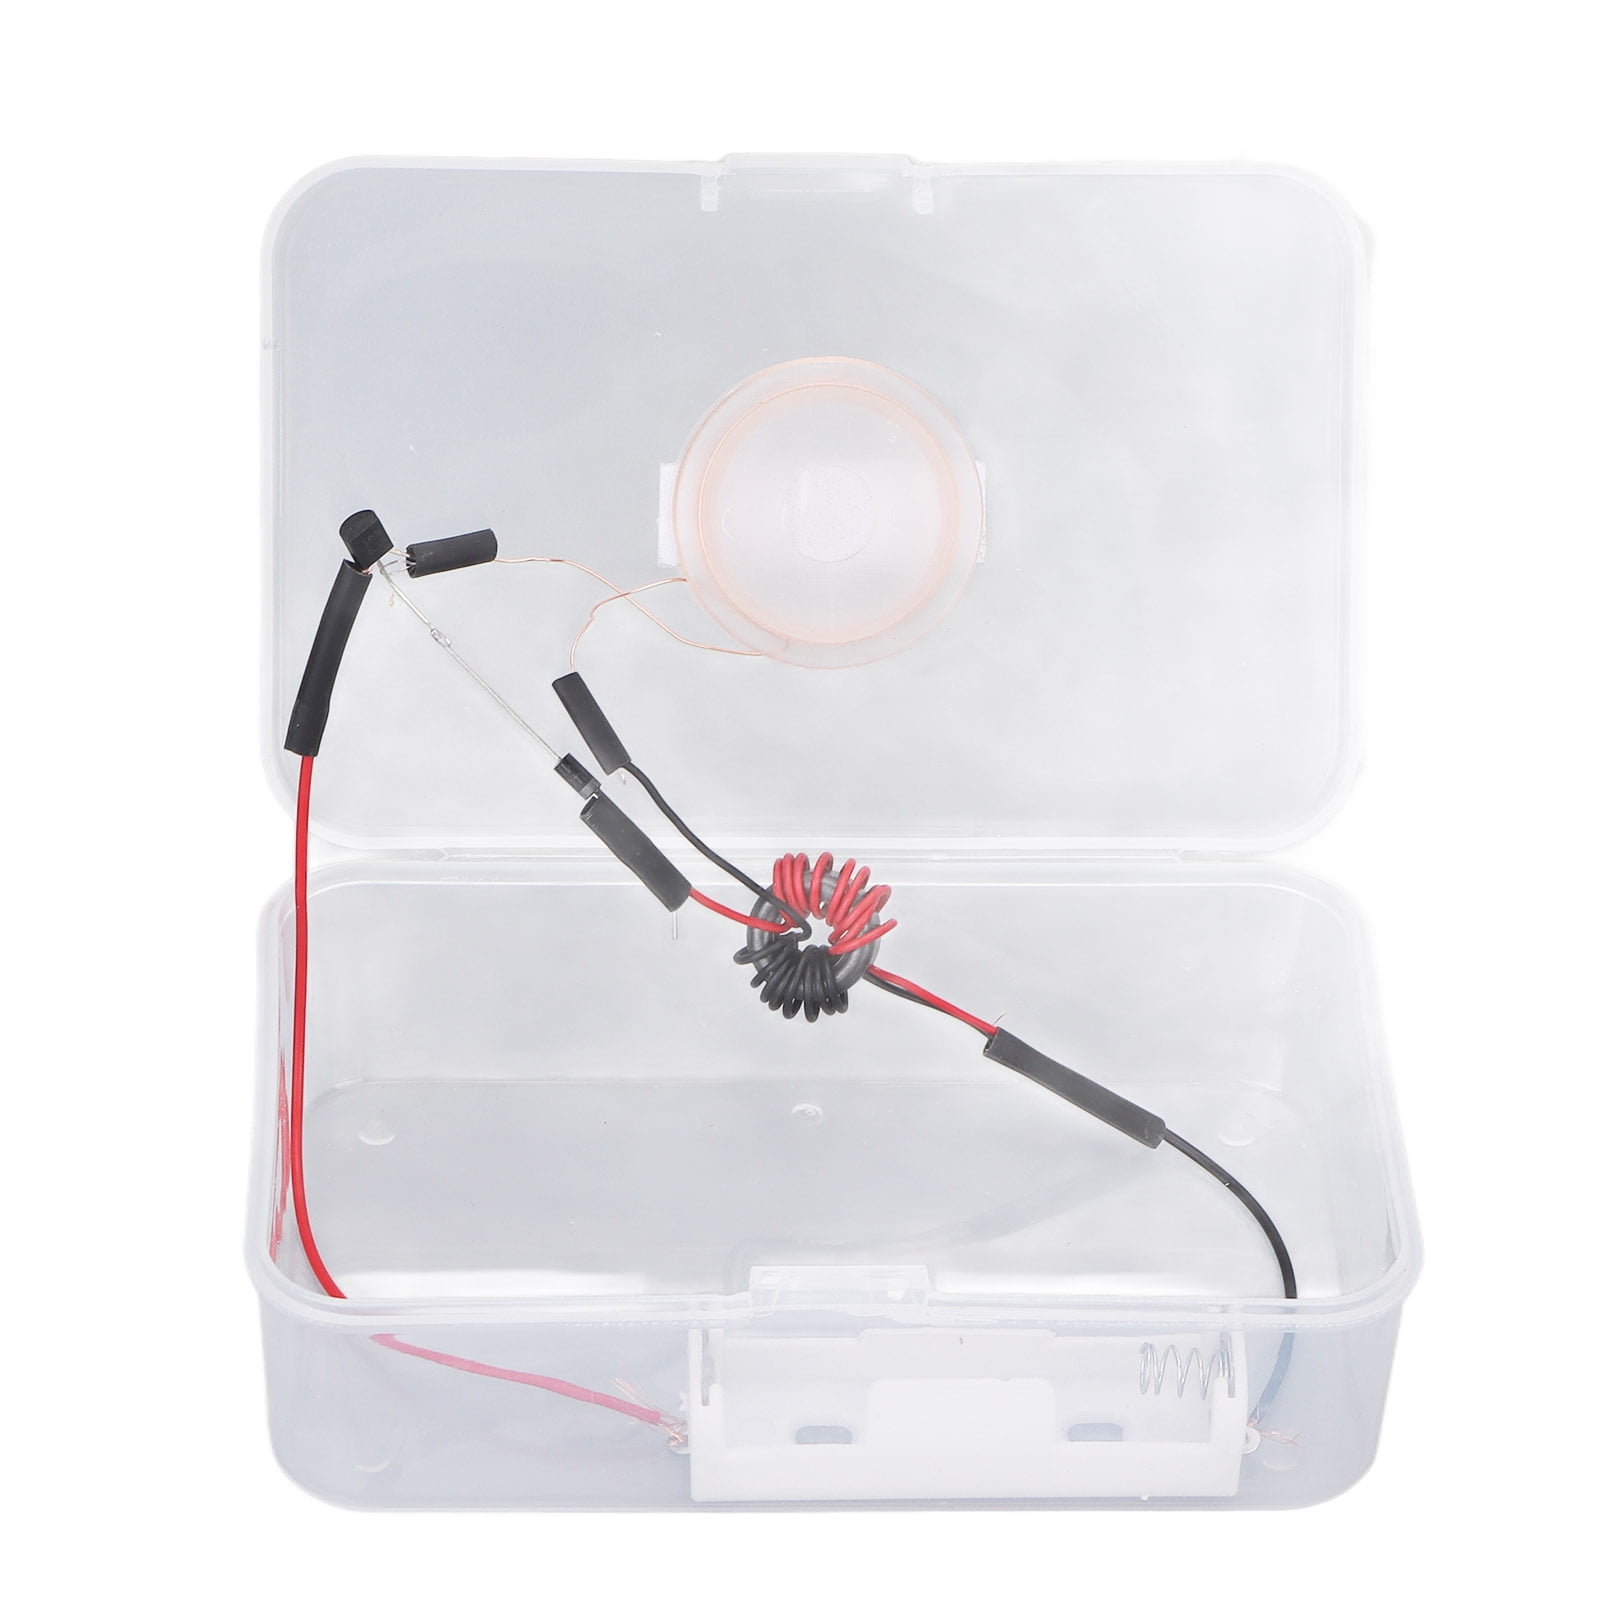 L'électricité statique Science Kit Science Discovery Kit Jouet Cadeau d'Argent de poche 